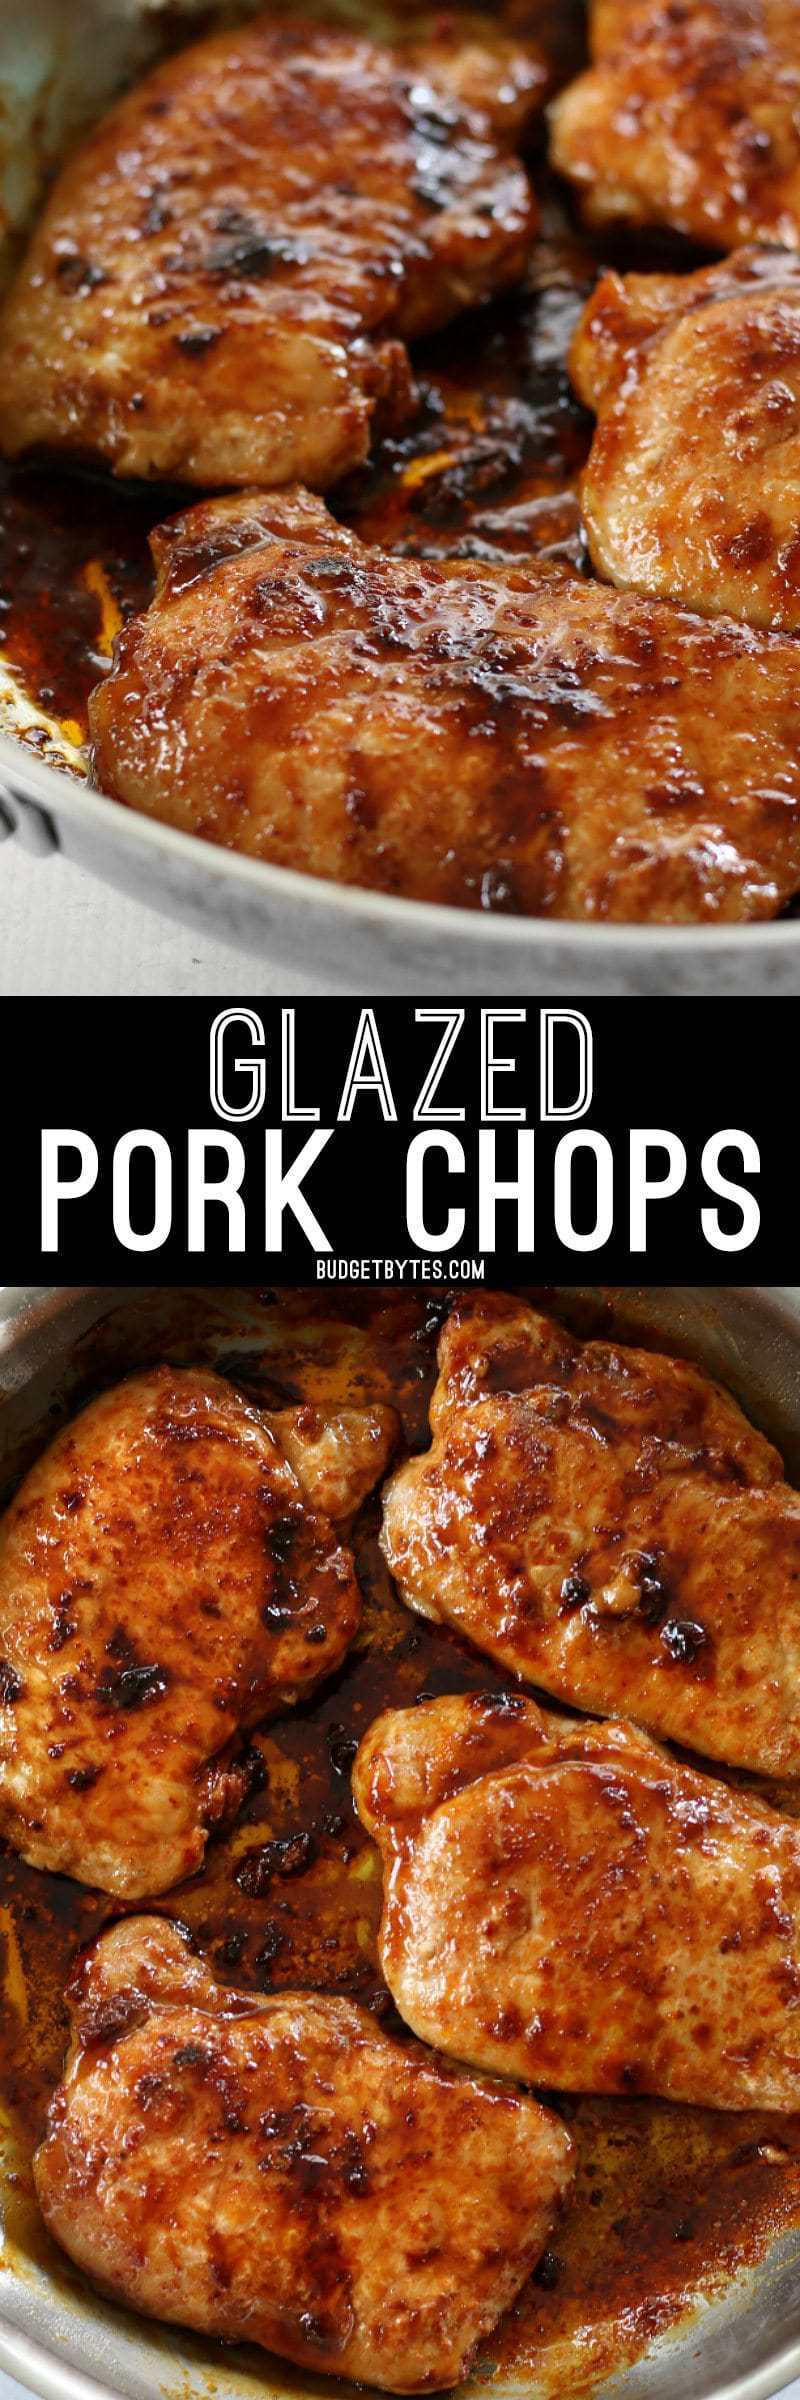 Glazed Pork Chops - Budget Bytes